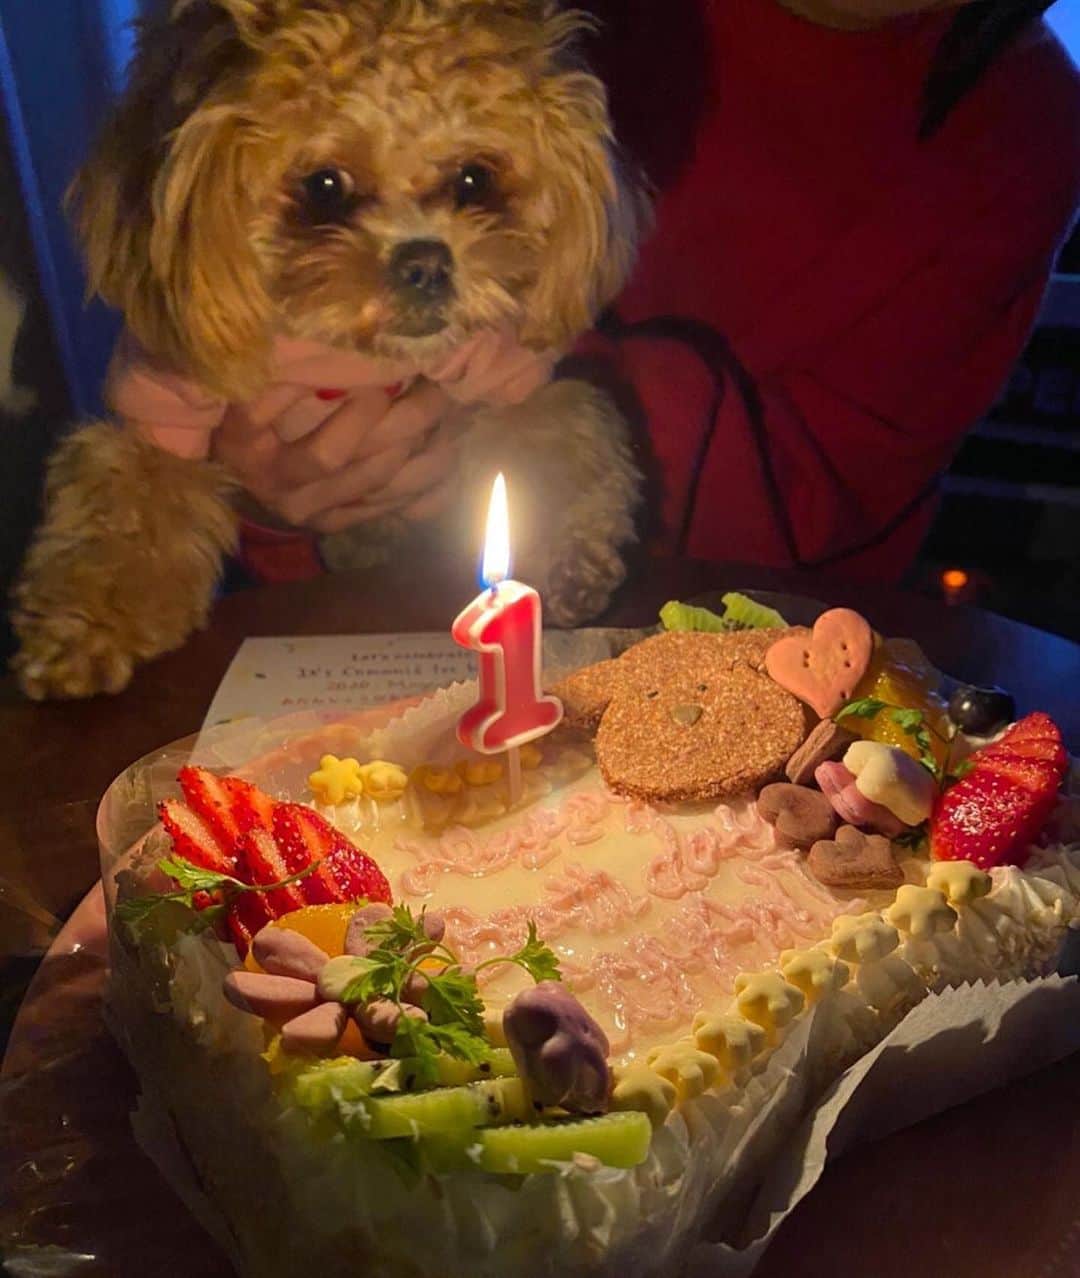 Manitasのインスタグラム：「投稿めんどくさくなちゃて放置してしまたいた 5/21にコマちゃん無事に1歳になりました🐶🎂💕 初めてのケーキおいしく食べてくれて母はうれしかた。 世界一かわいい犬よ、毎日癒しをありがとうだよ。愛 #犬のいる暮らし #ペキプー #コマニ1歳おめでとう」